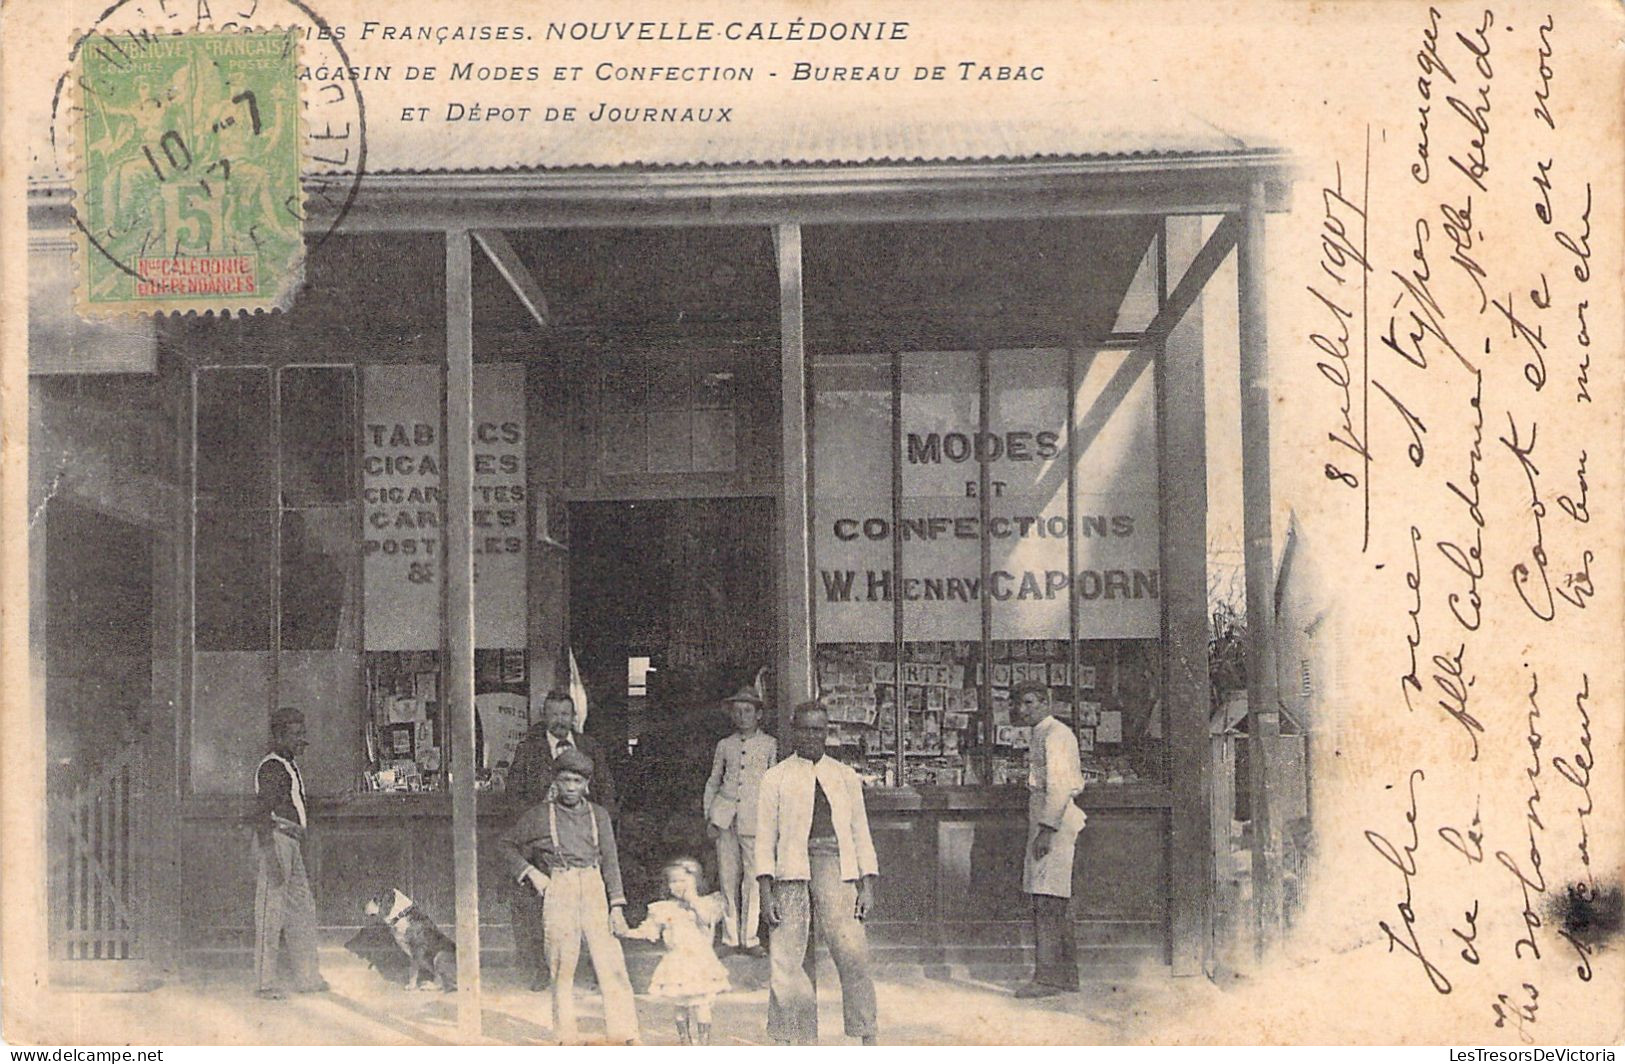 NOUVELLE CALEDONIE - NOUMEA - Magasin De Modes Et Confection - Bureau De Tabac - Carte Postale Ancienne - Nouvelle-Calédonie